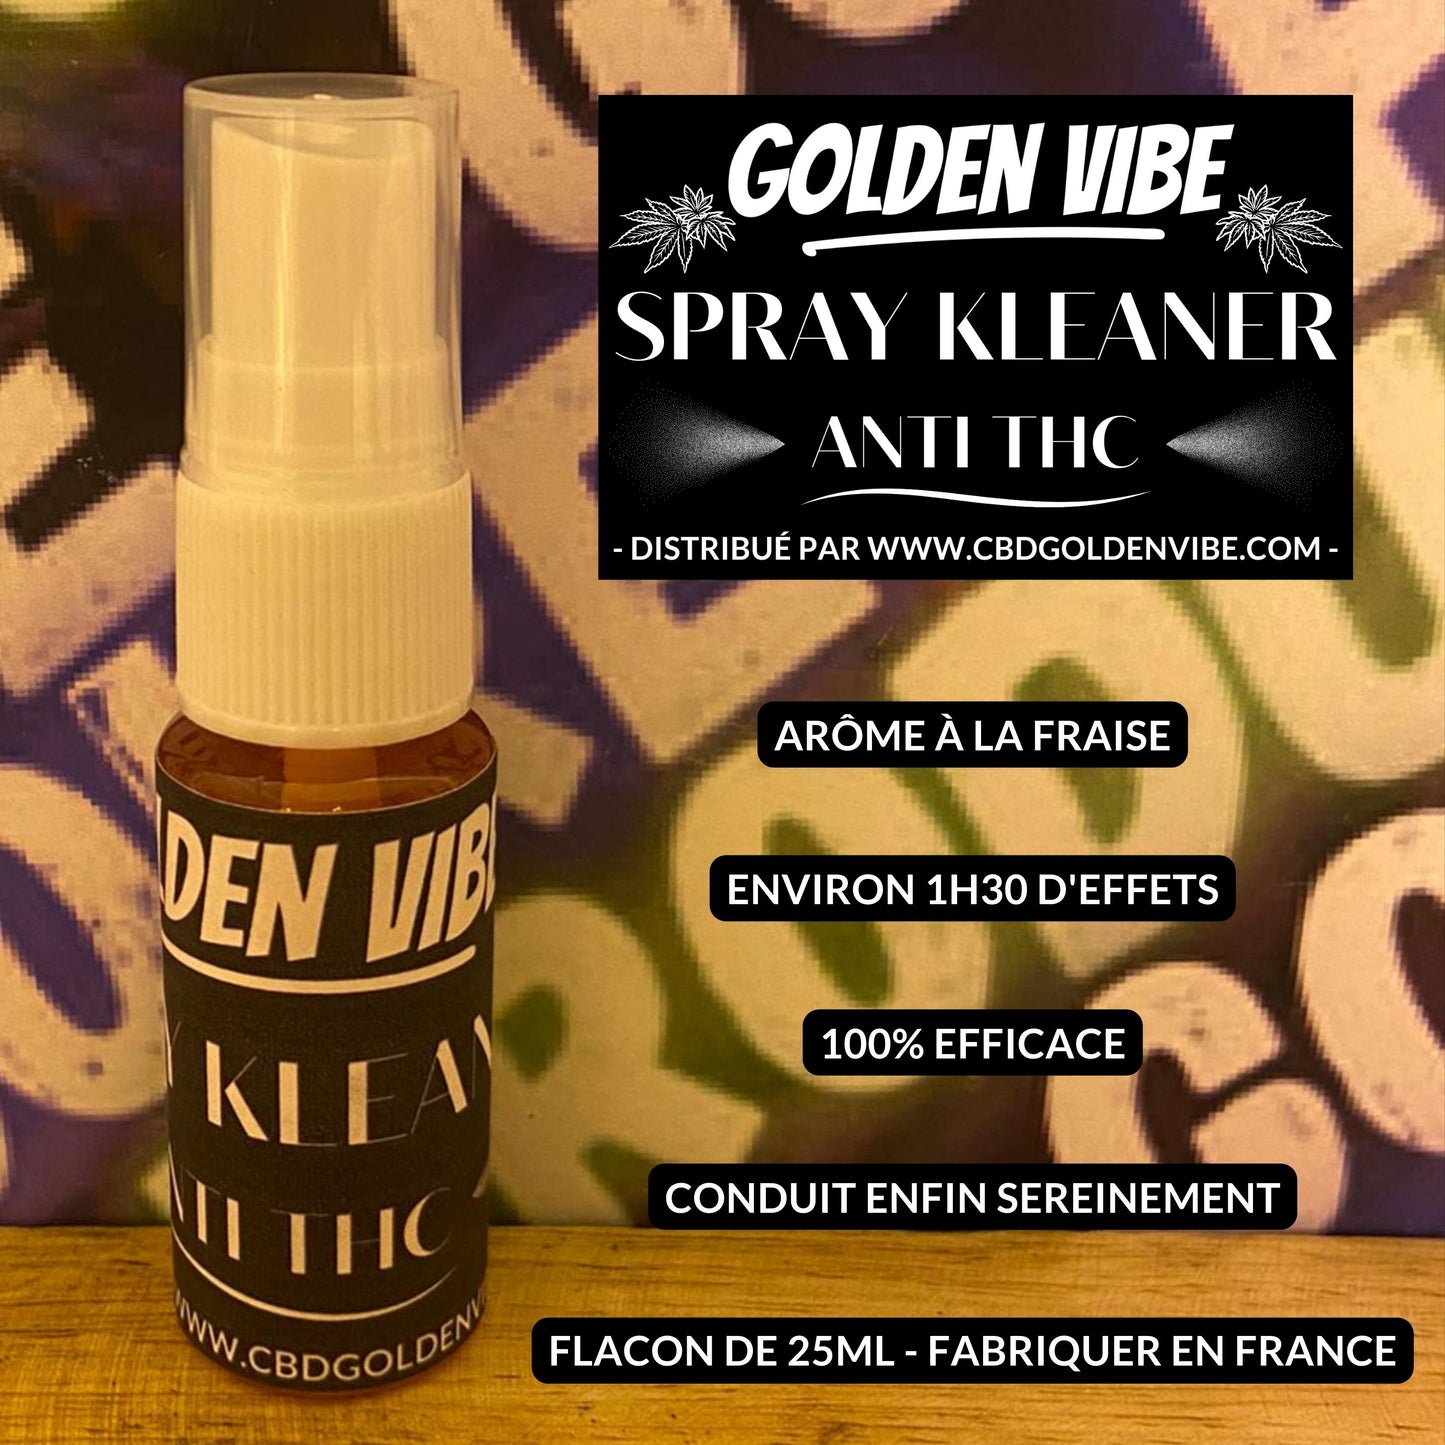 SPRAY KLEANER ANTI-THC – Golden Vibe